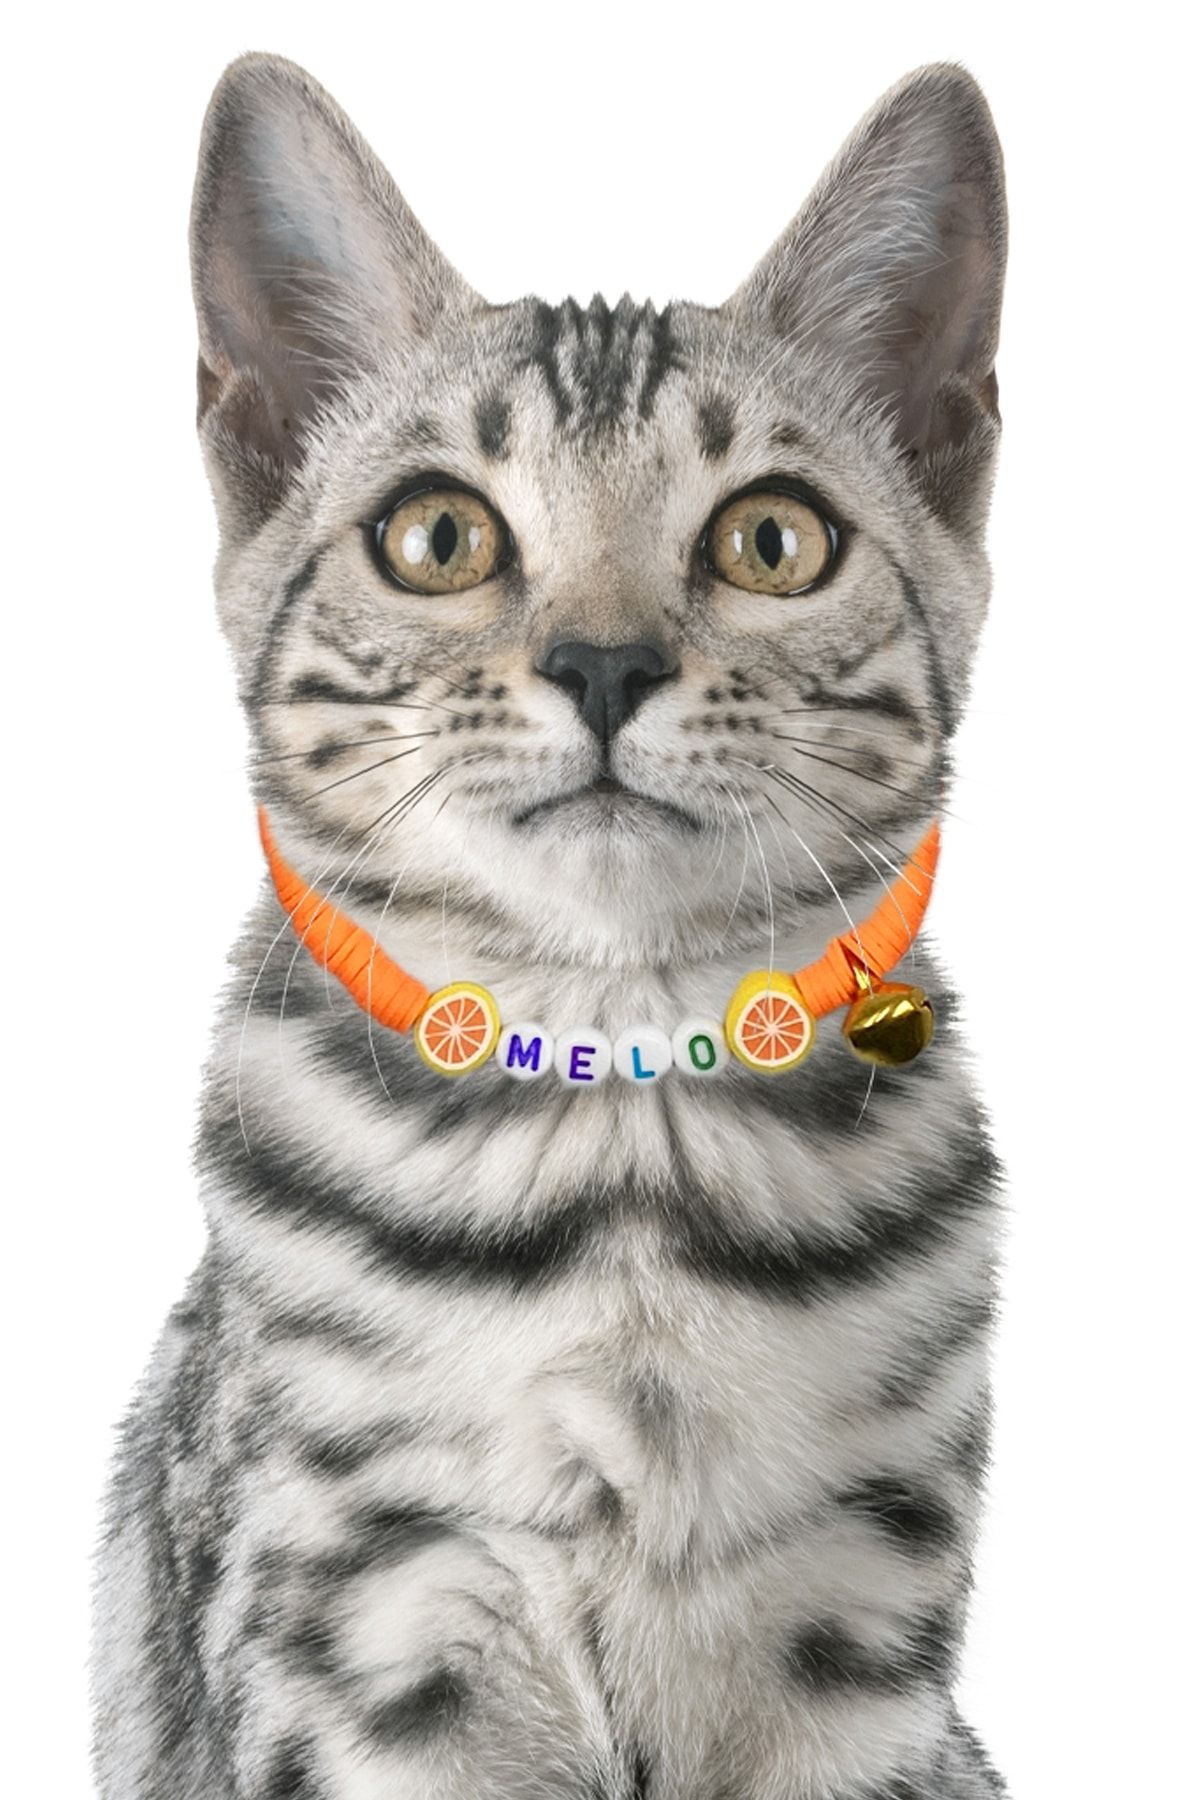 Petella Kedi Boyun Tasması Kedi Kolyesi Isimli Kedi Tasması Ayarlanabilir Portakal Detaylı